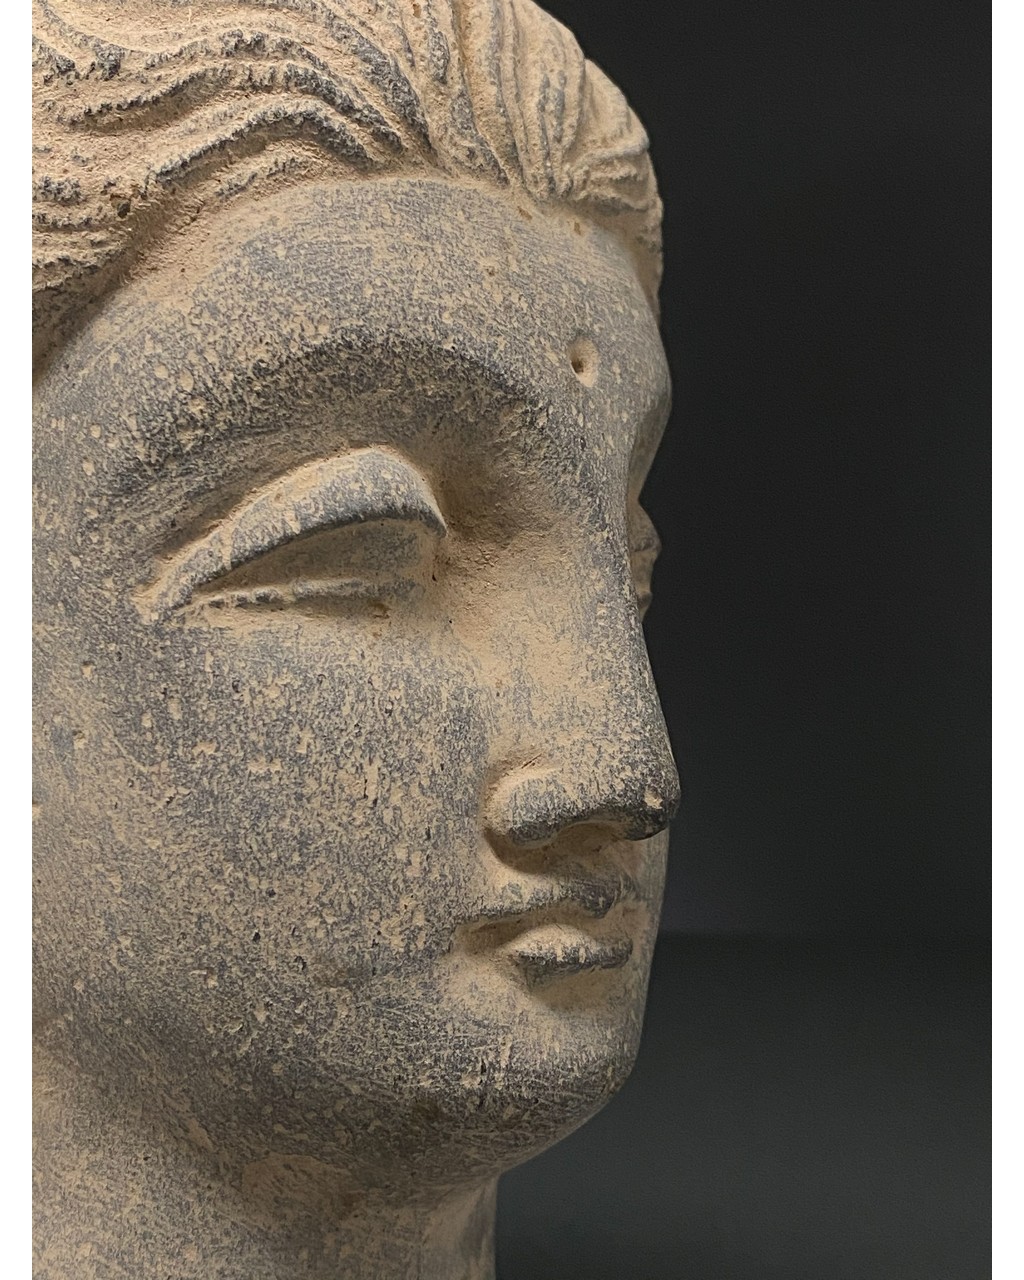 GANDHARA, SCHIST STONE HEAD OF BUDDHA - Image 9 of 12